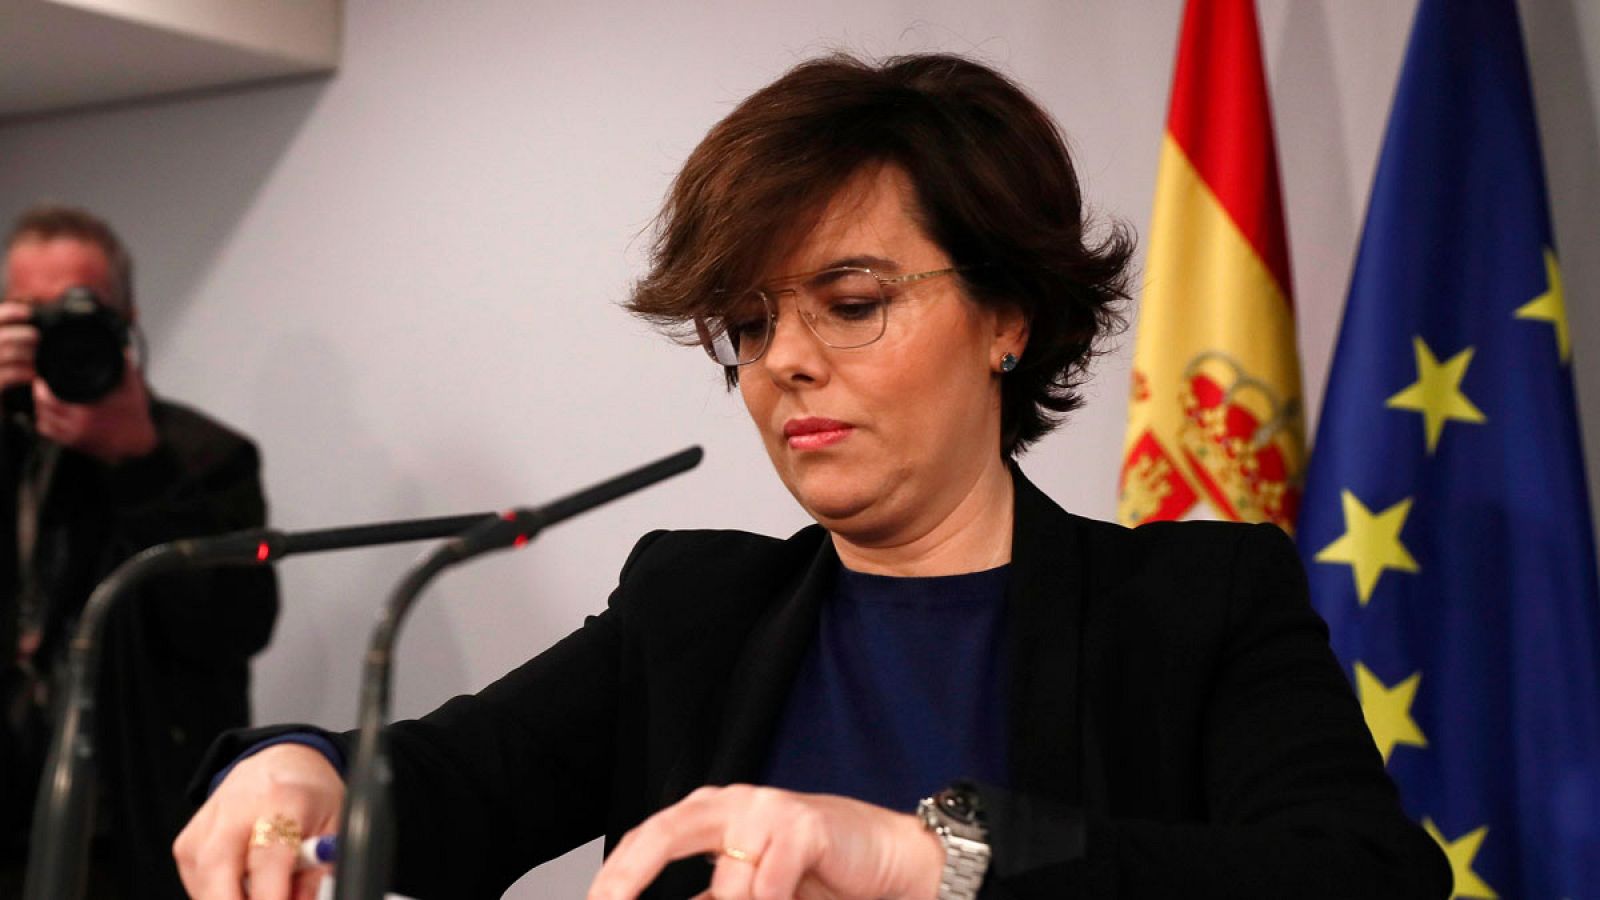 El Consejo de Estado no avala impugnar ahora la investidura de Puigdemont, pero el Gobierno seguirá adelante